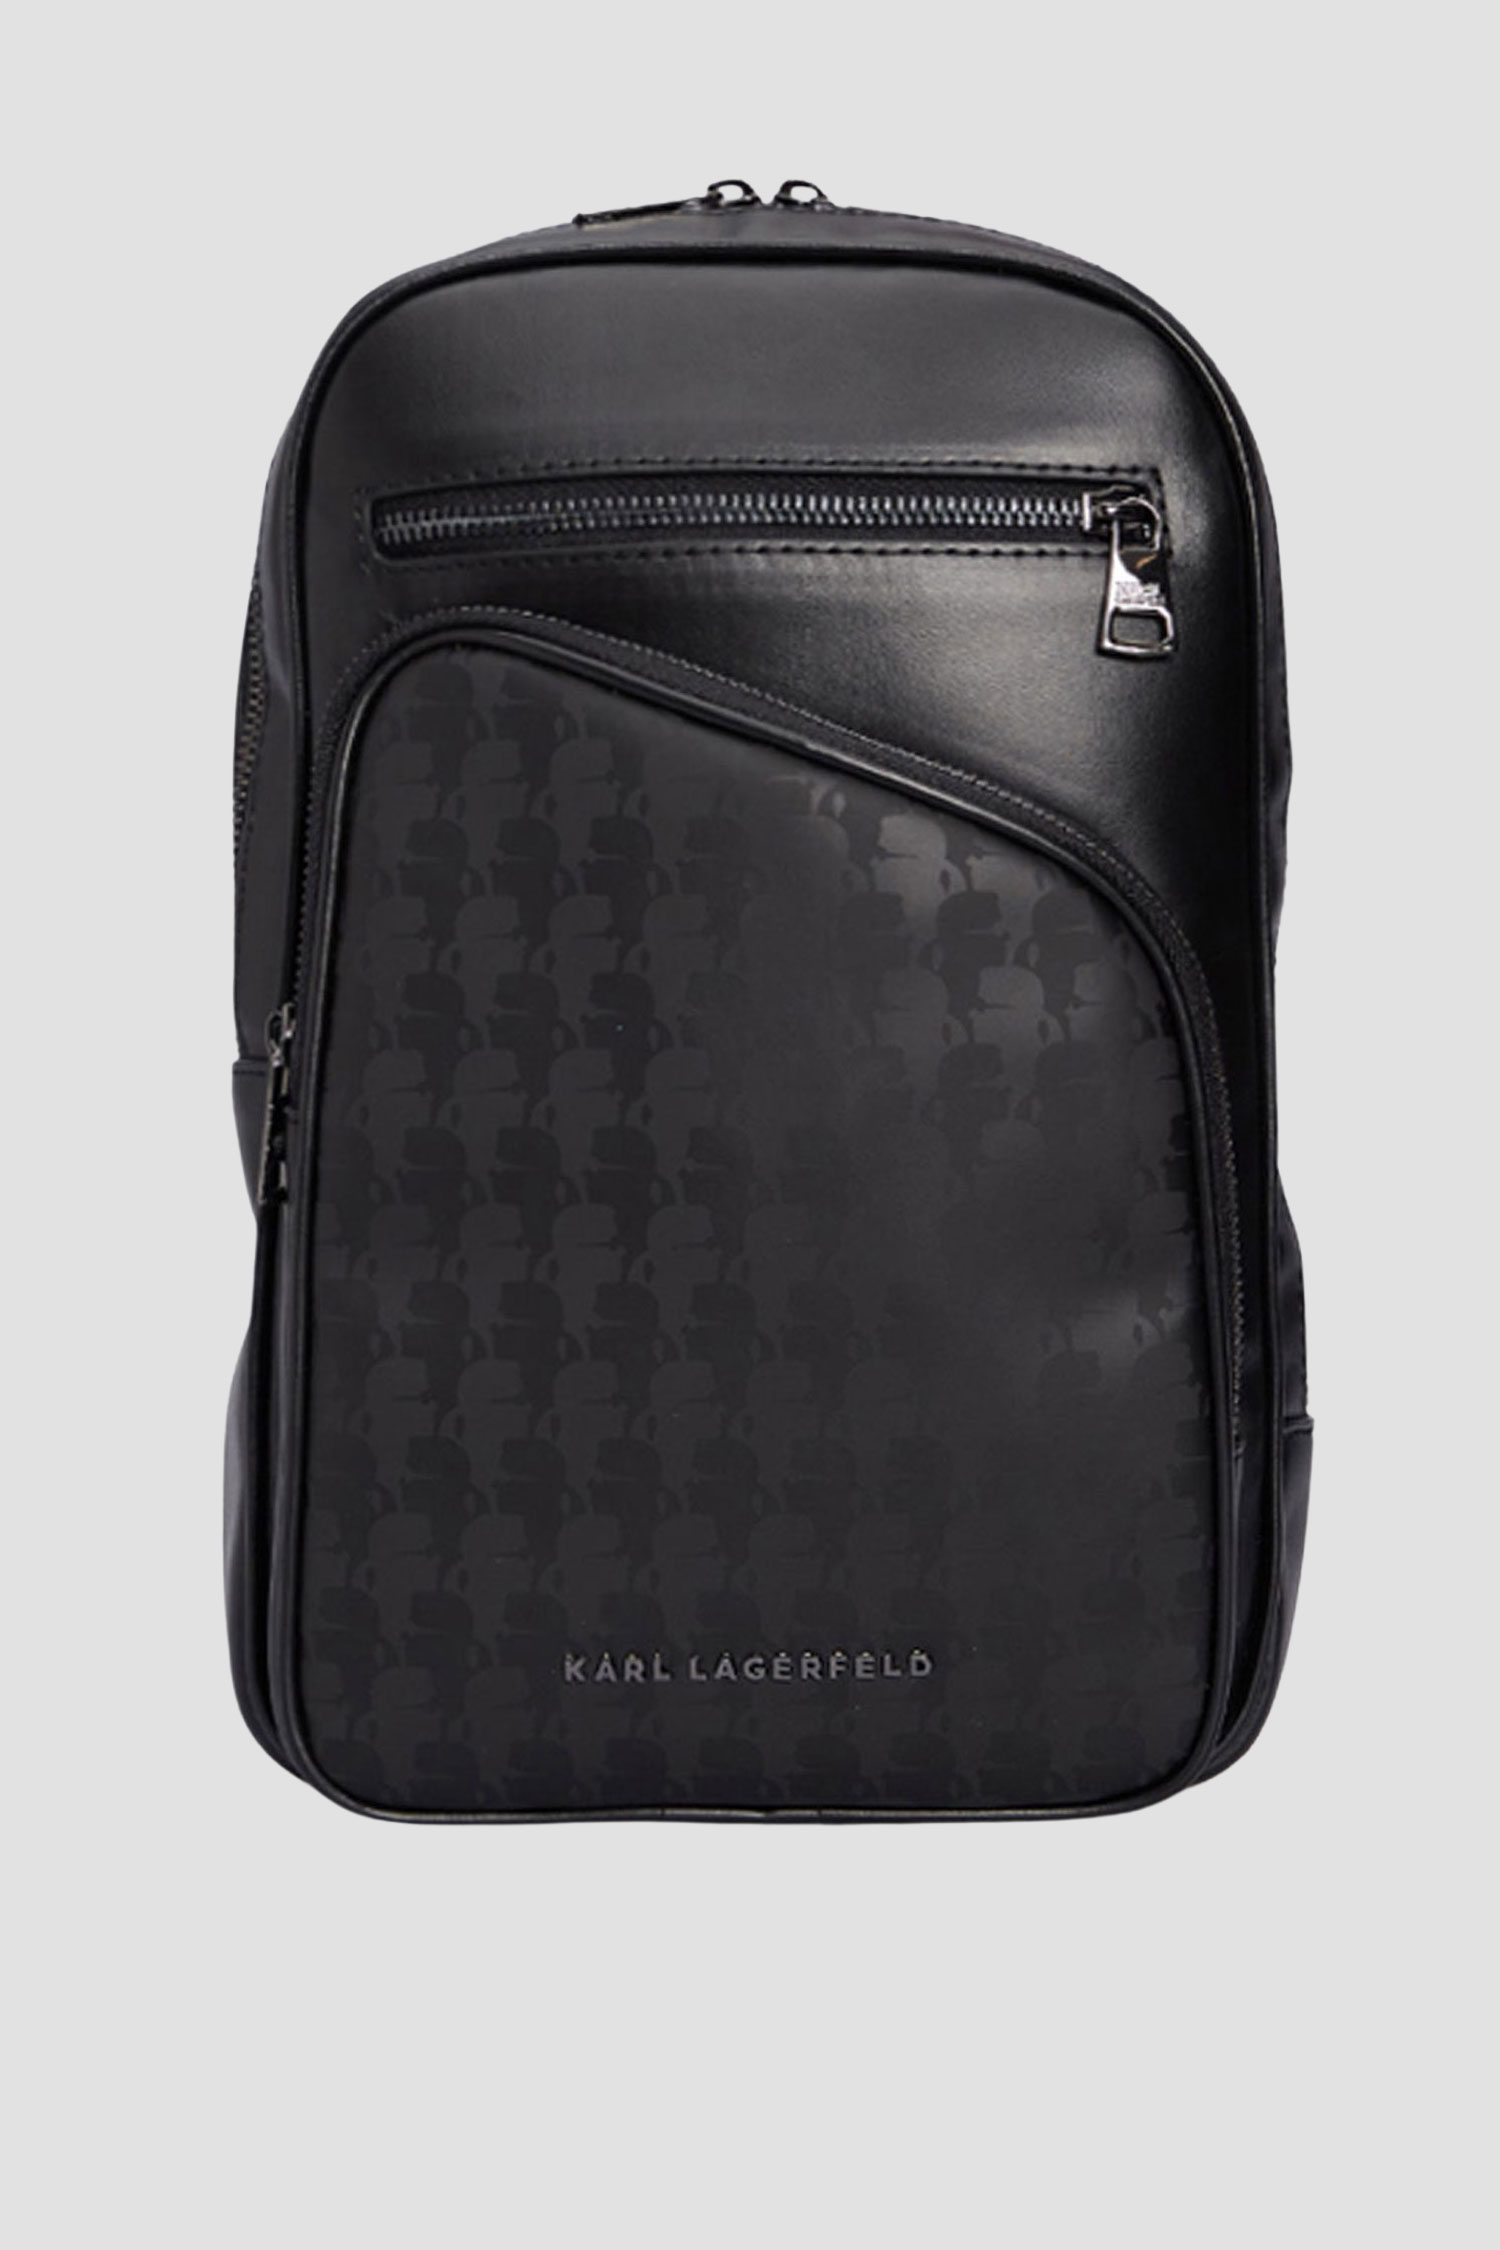 Чоловіча чорна сумка Karl Lagerfeld 534114.805904;990